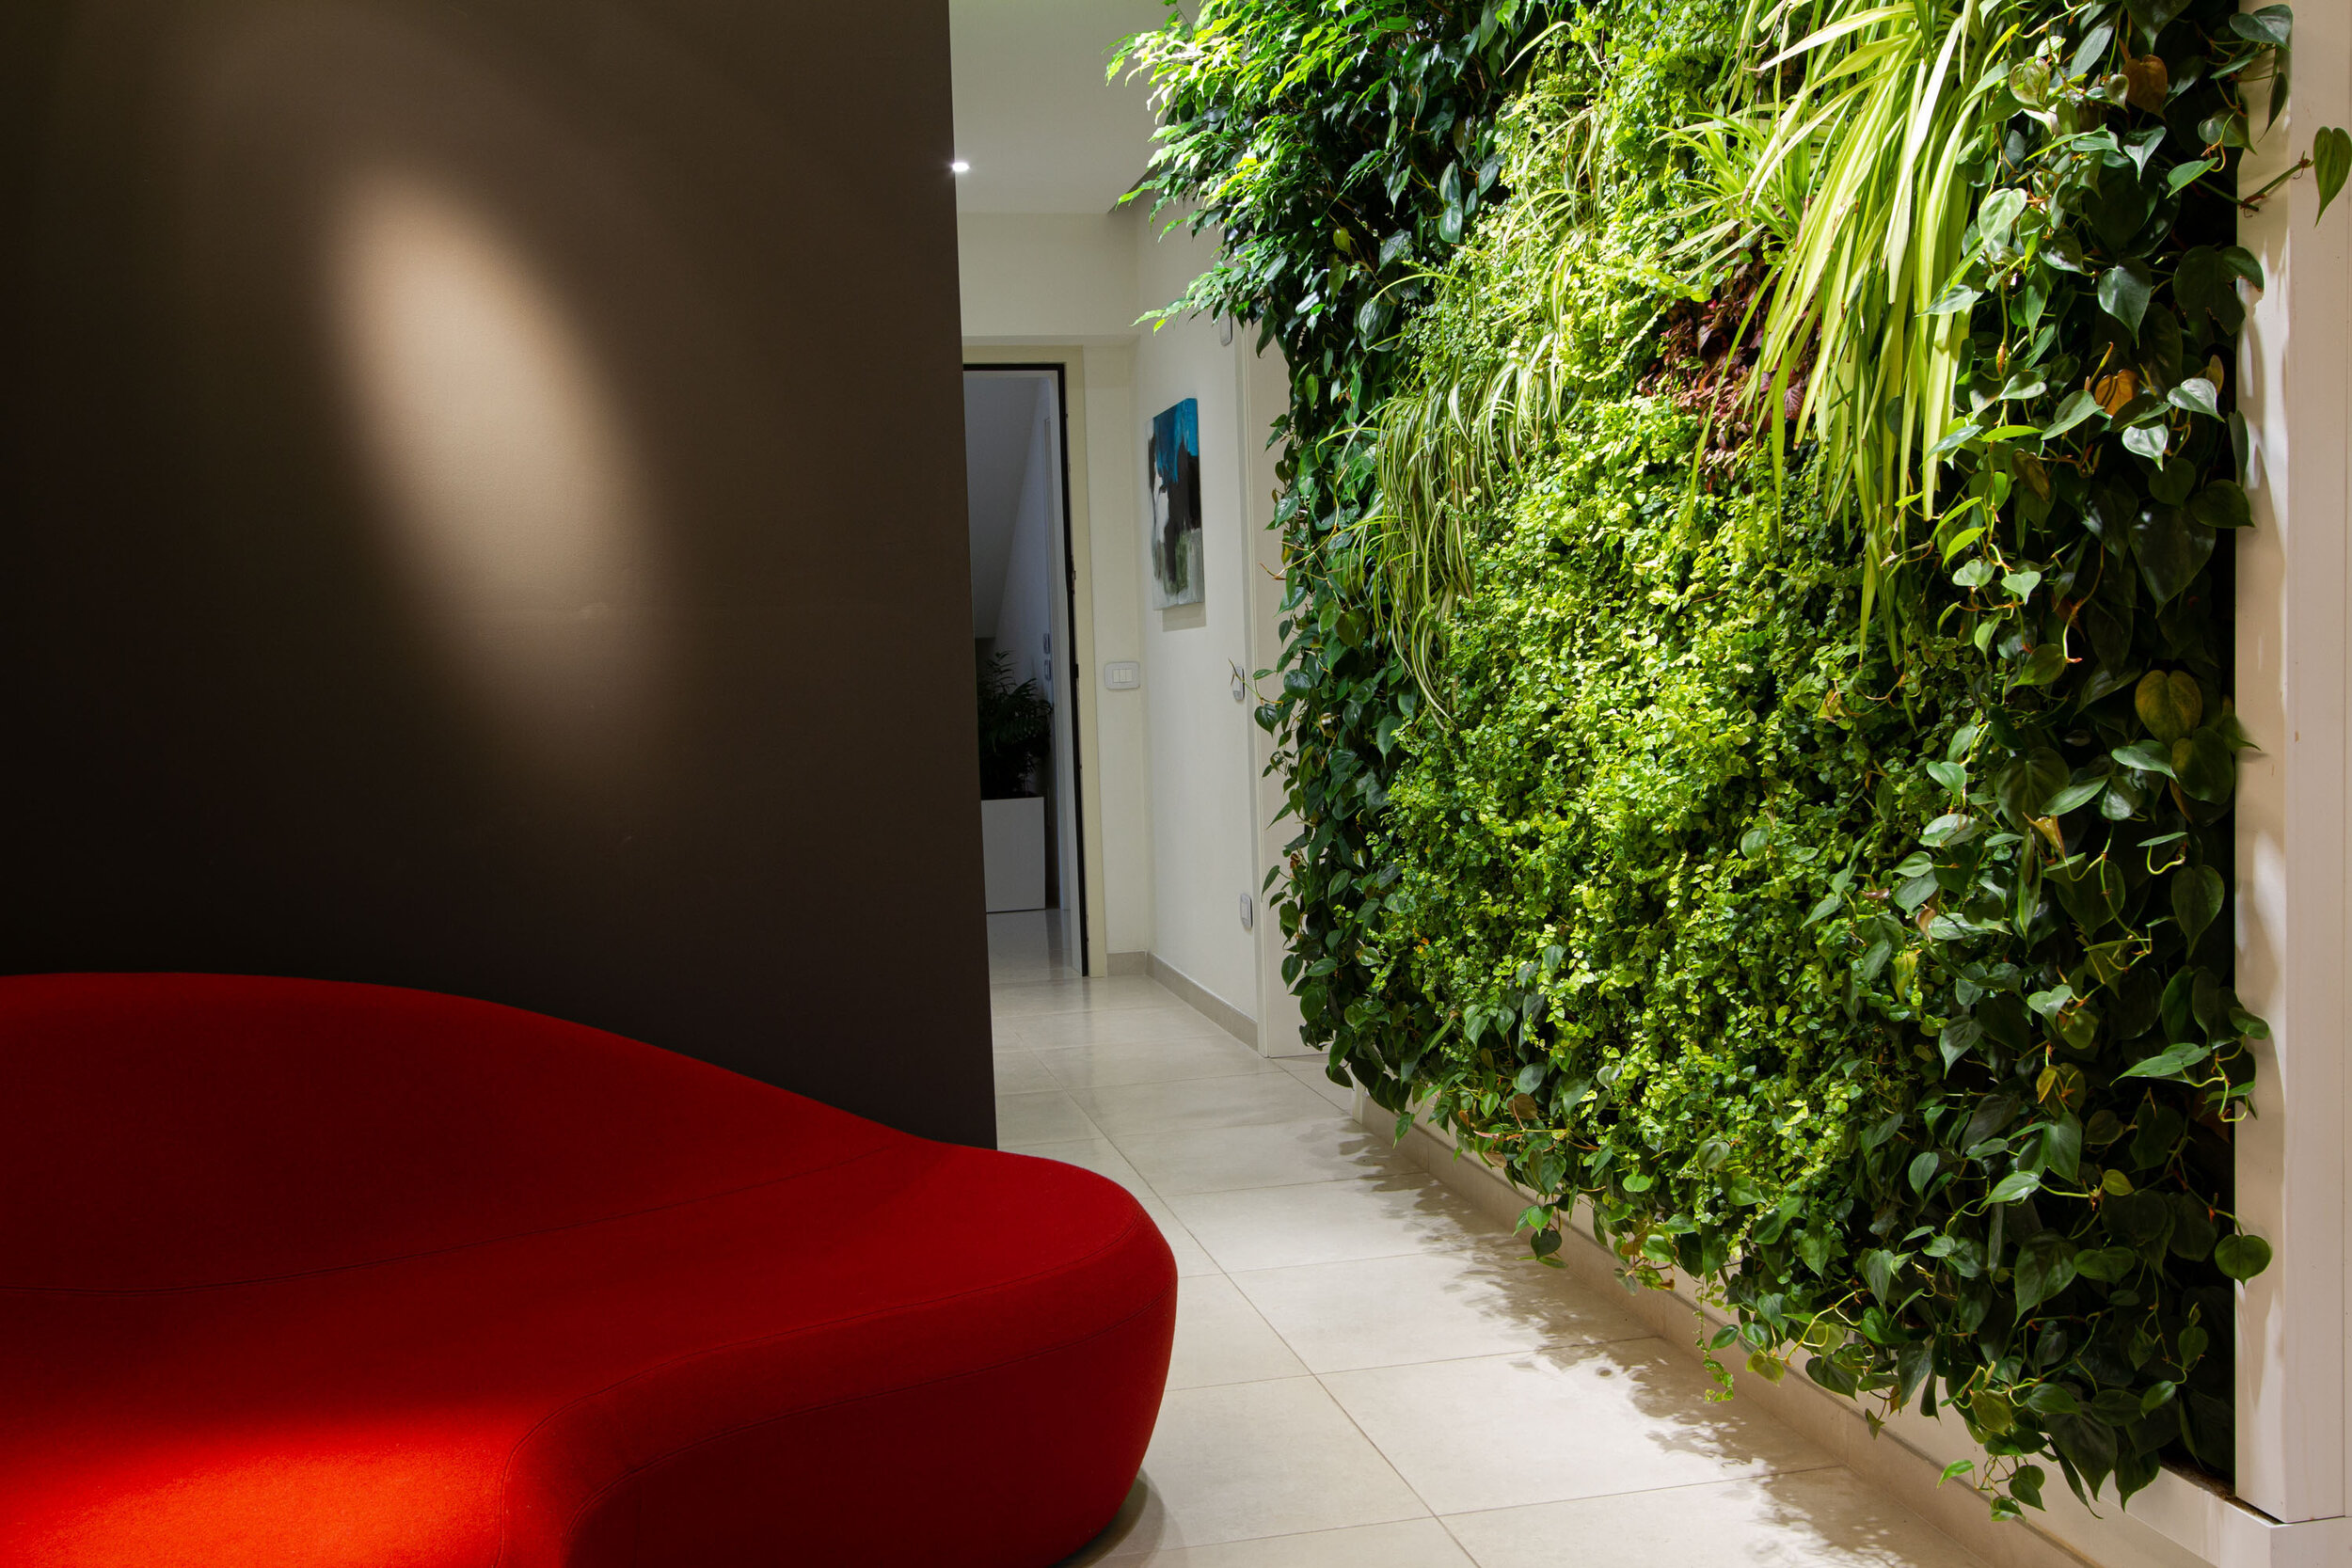 studio-cavazza-garden-vertical-wall-green-sundar-italia-003.JPG